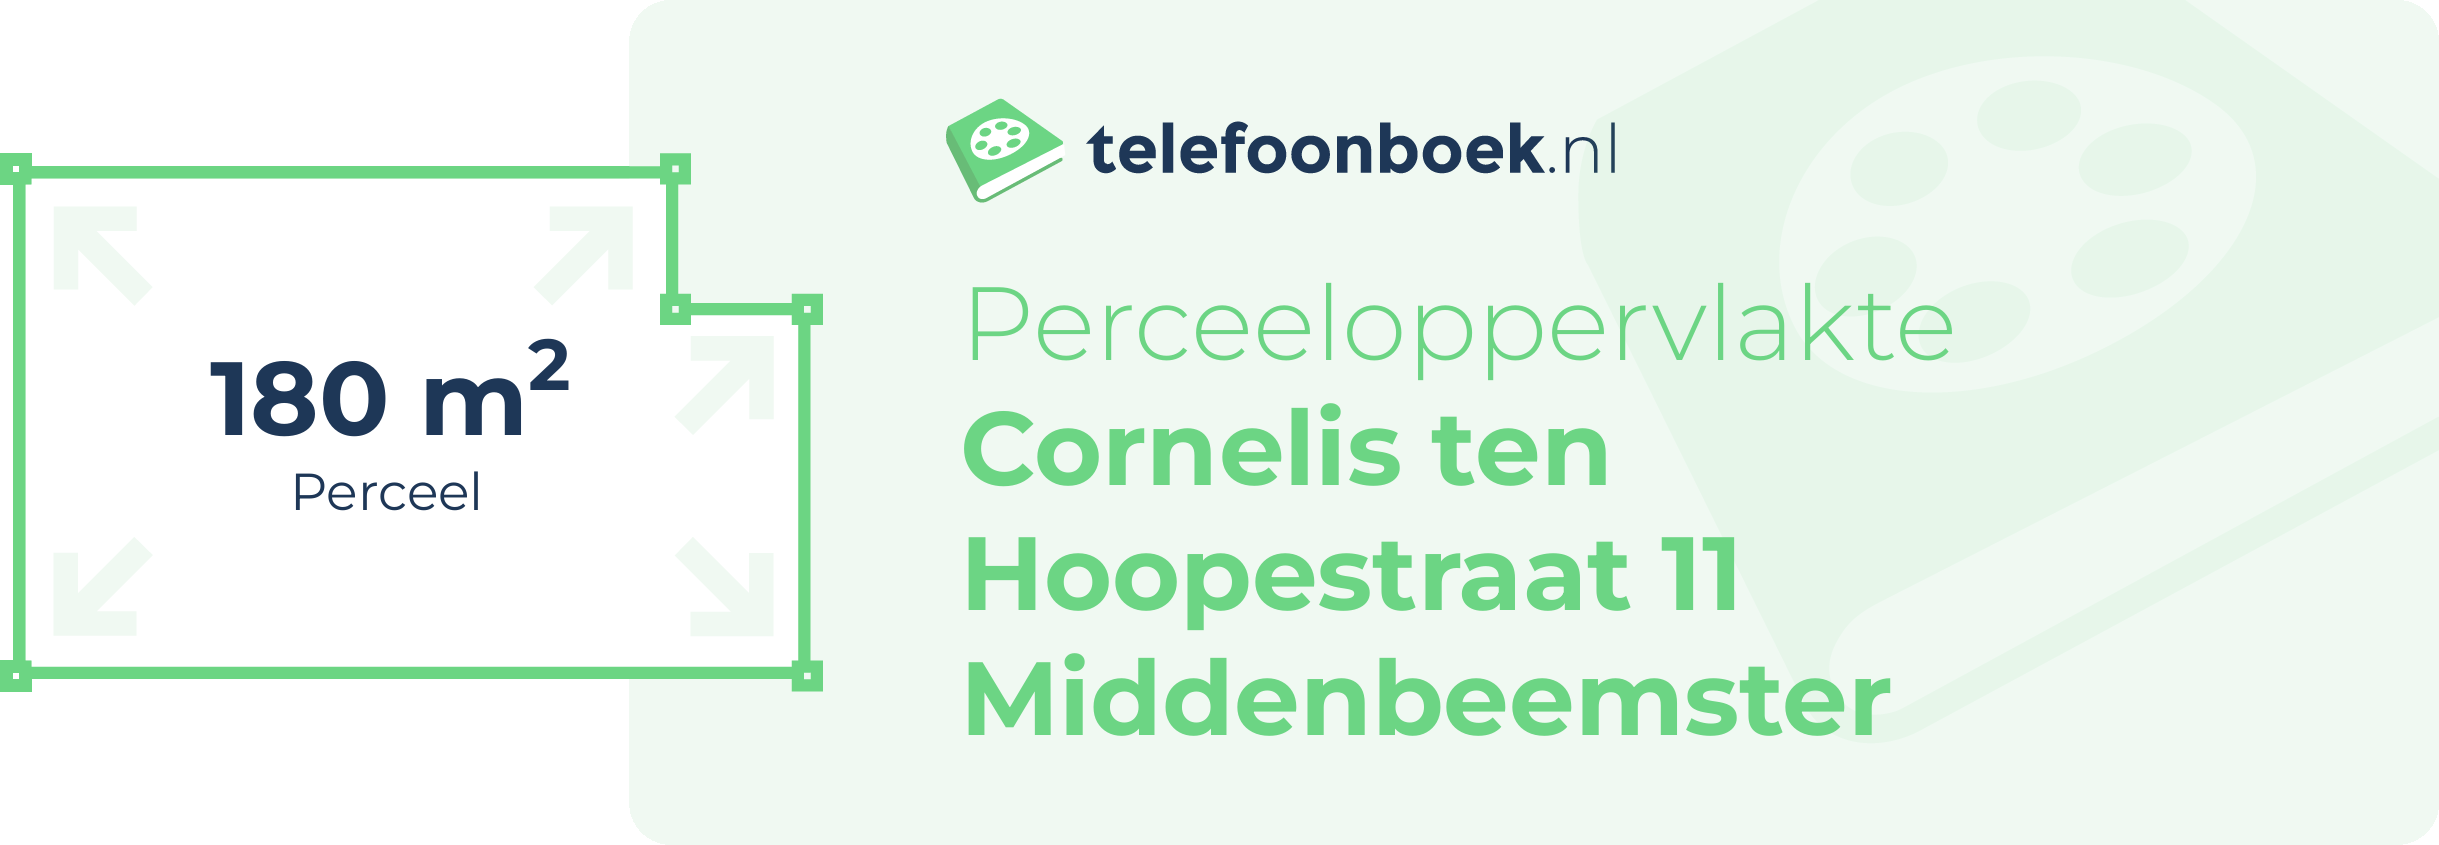 Perceeloppervlakte Cornelis Ten Hoopestraat 11 Middenbeemster